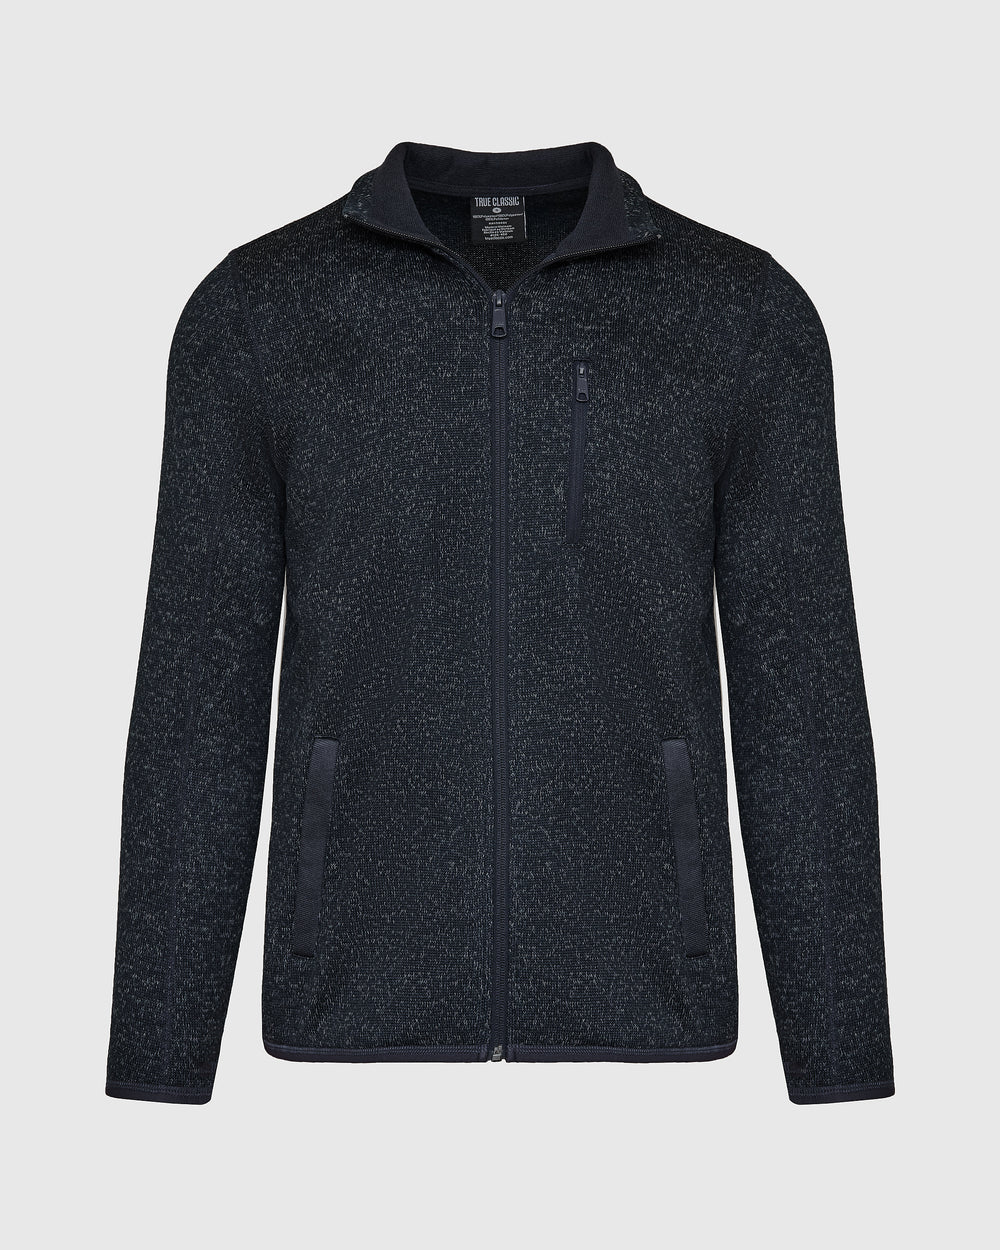 Gray Sweater Fleece Jacket | Gray Sweater Fleece Jacket | True Classic